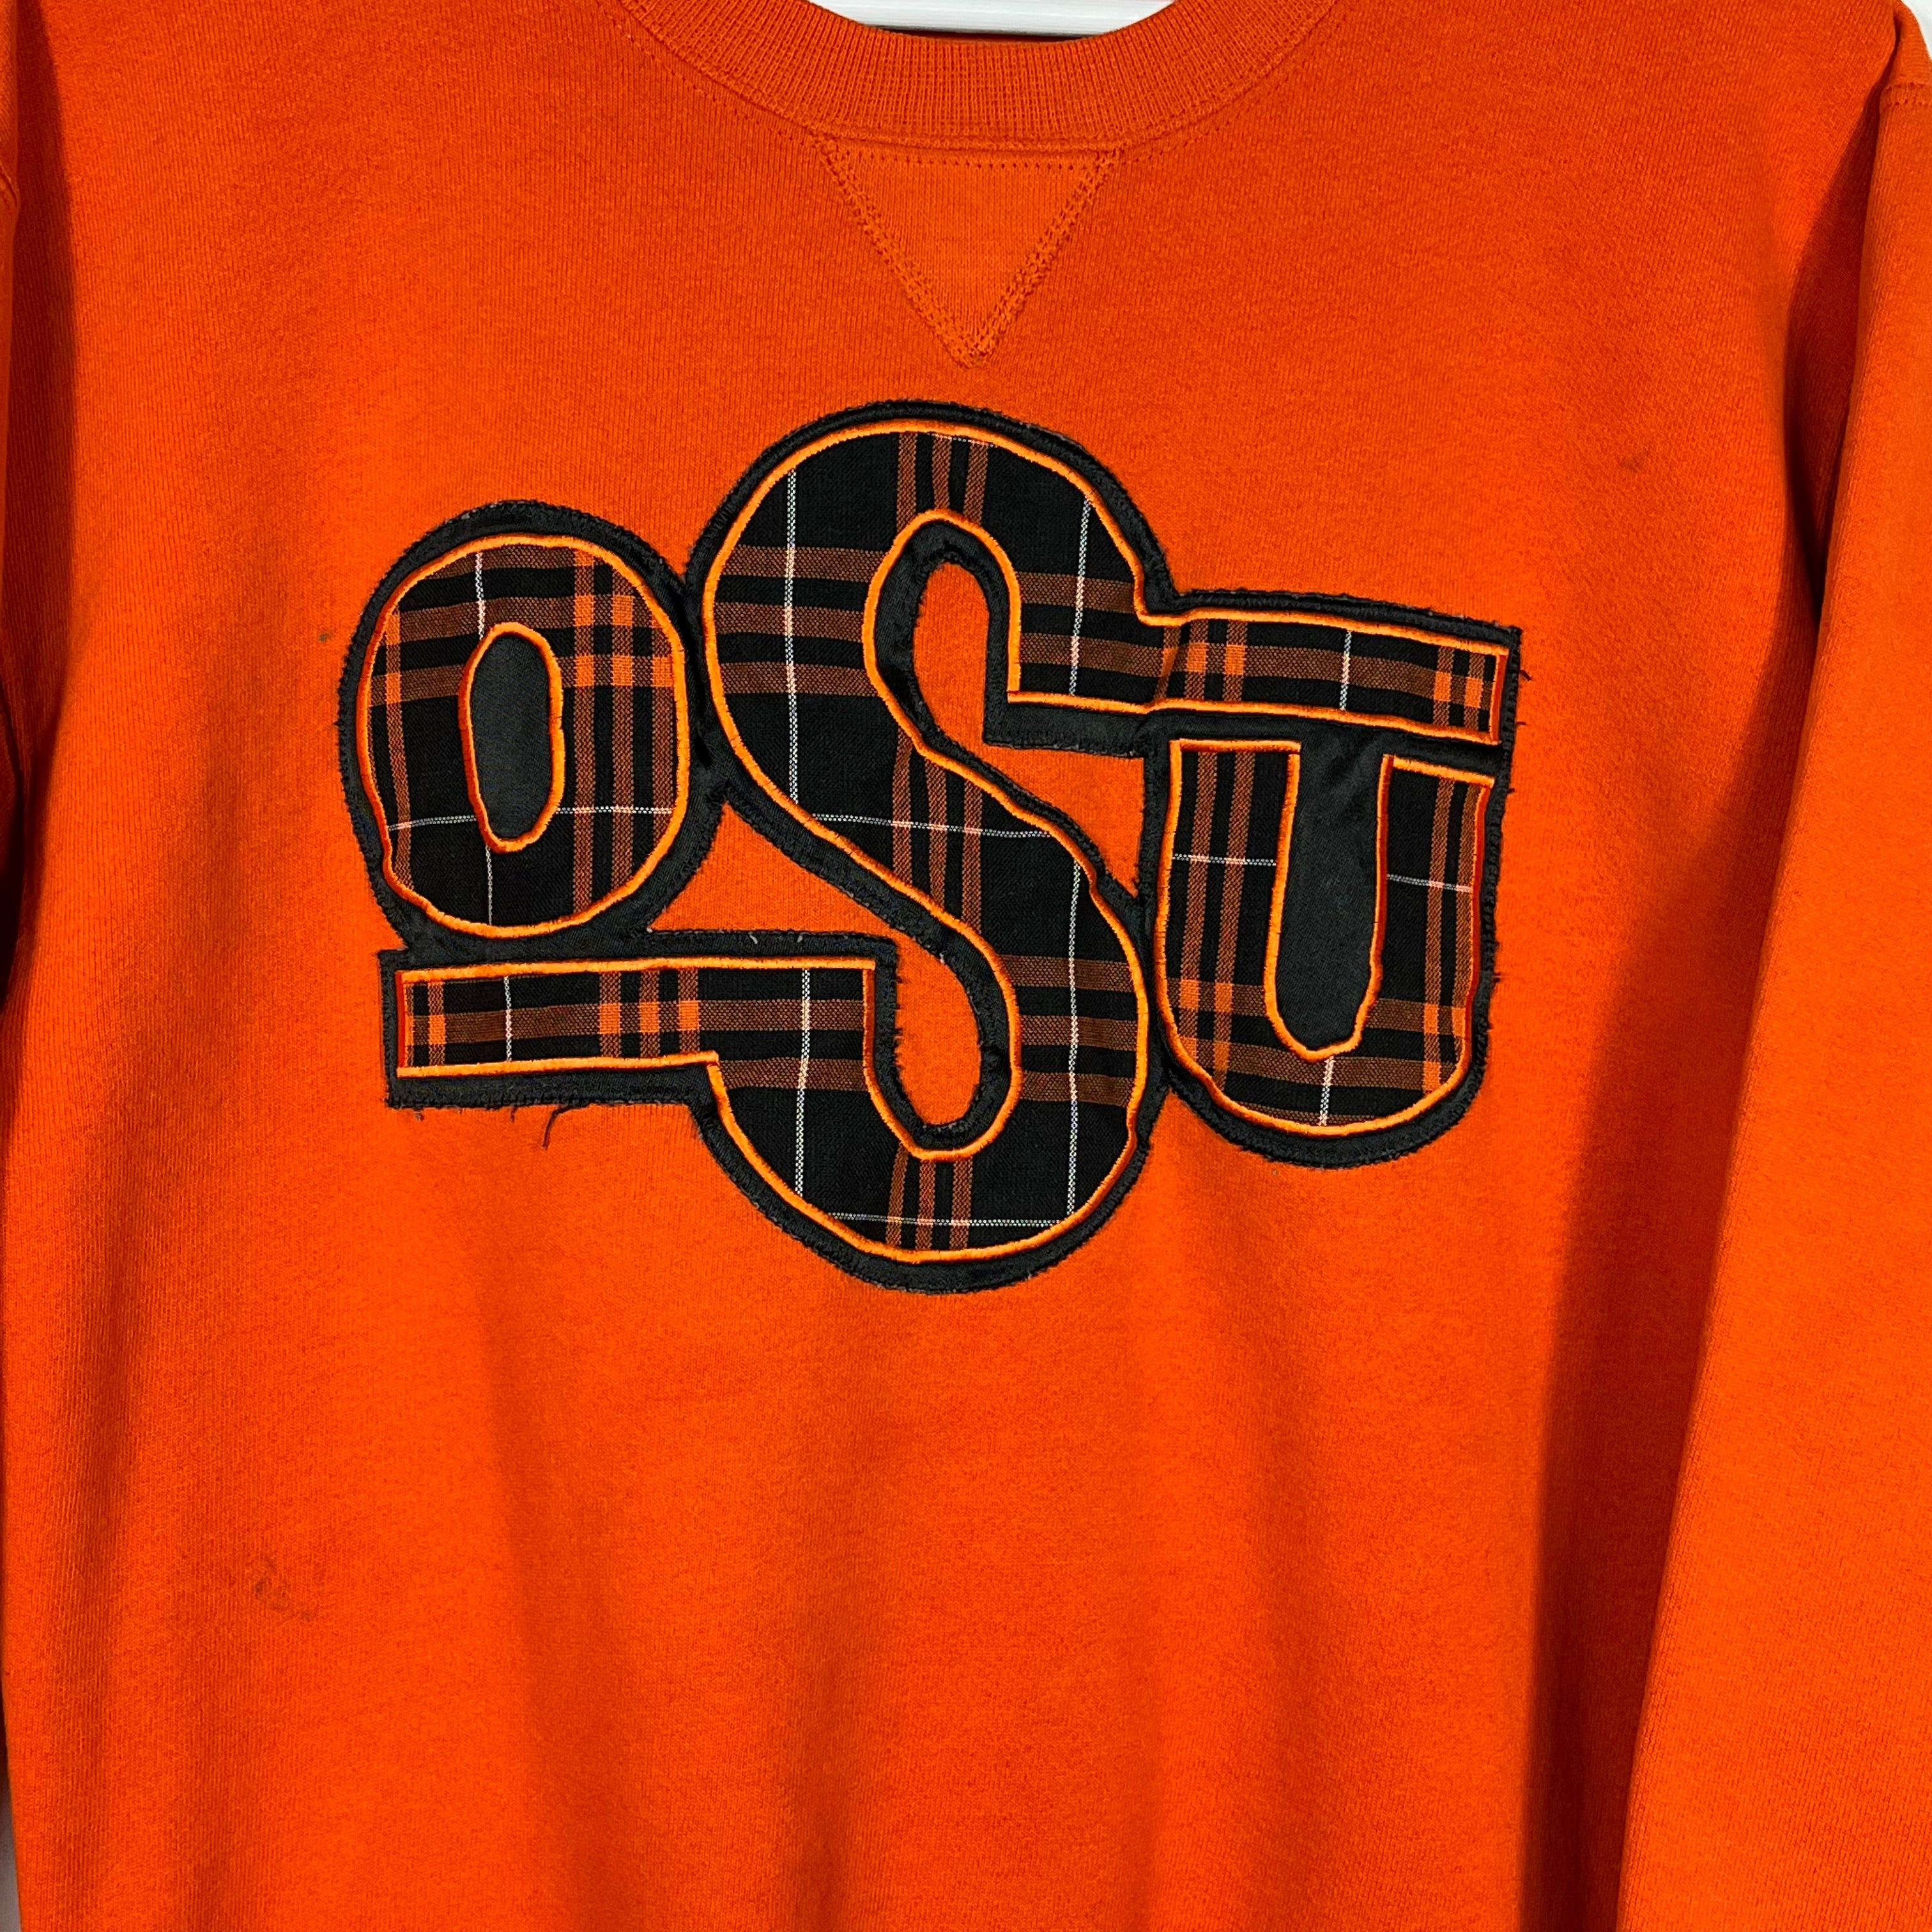 Vintage OSU Crewneck Sweatshirt - Men's Medium